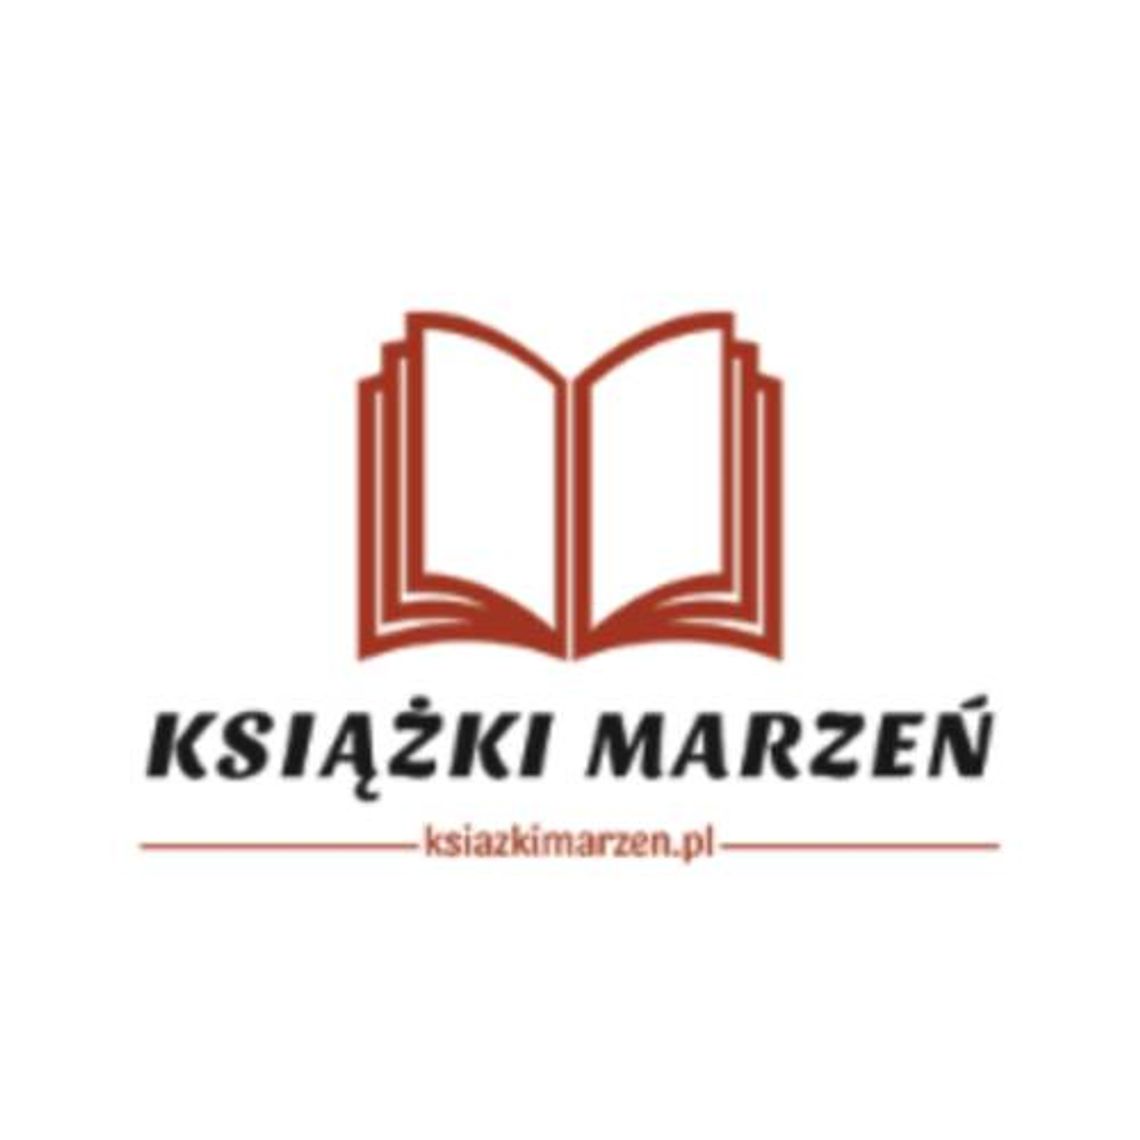 Ksiazkimarzen.pl - książki, dyplomy, gry i zabawki